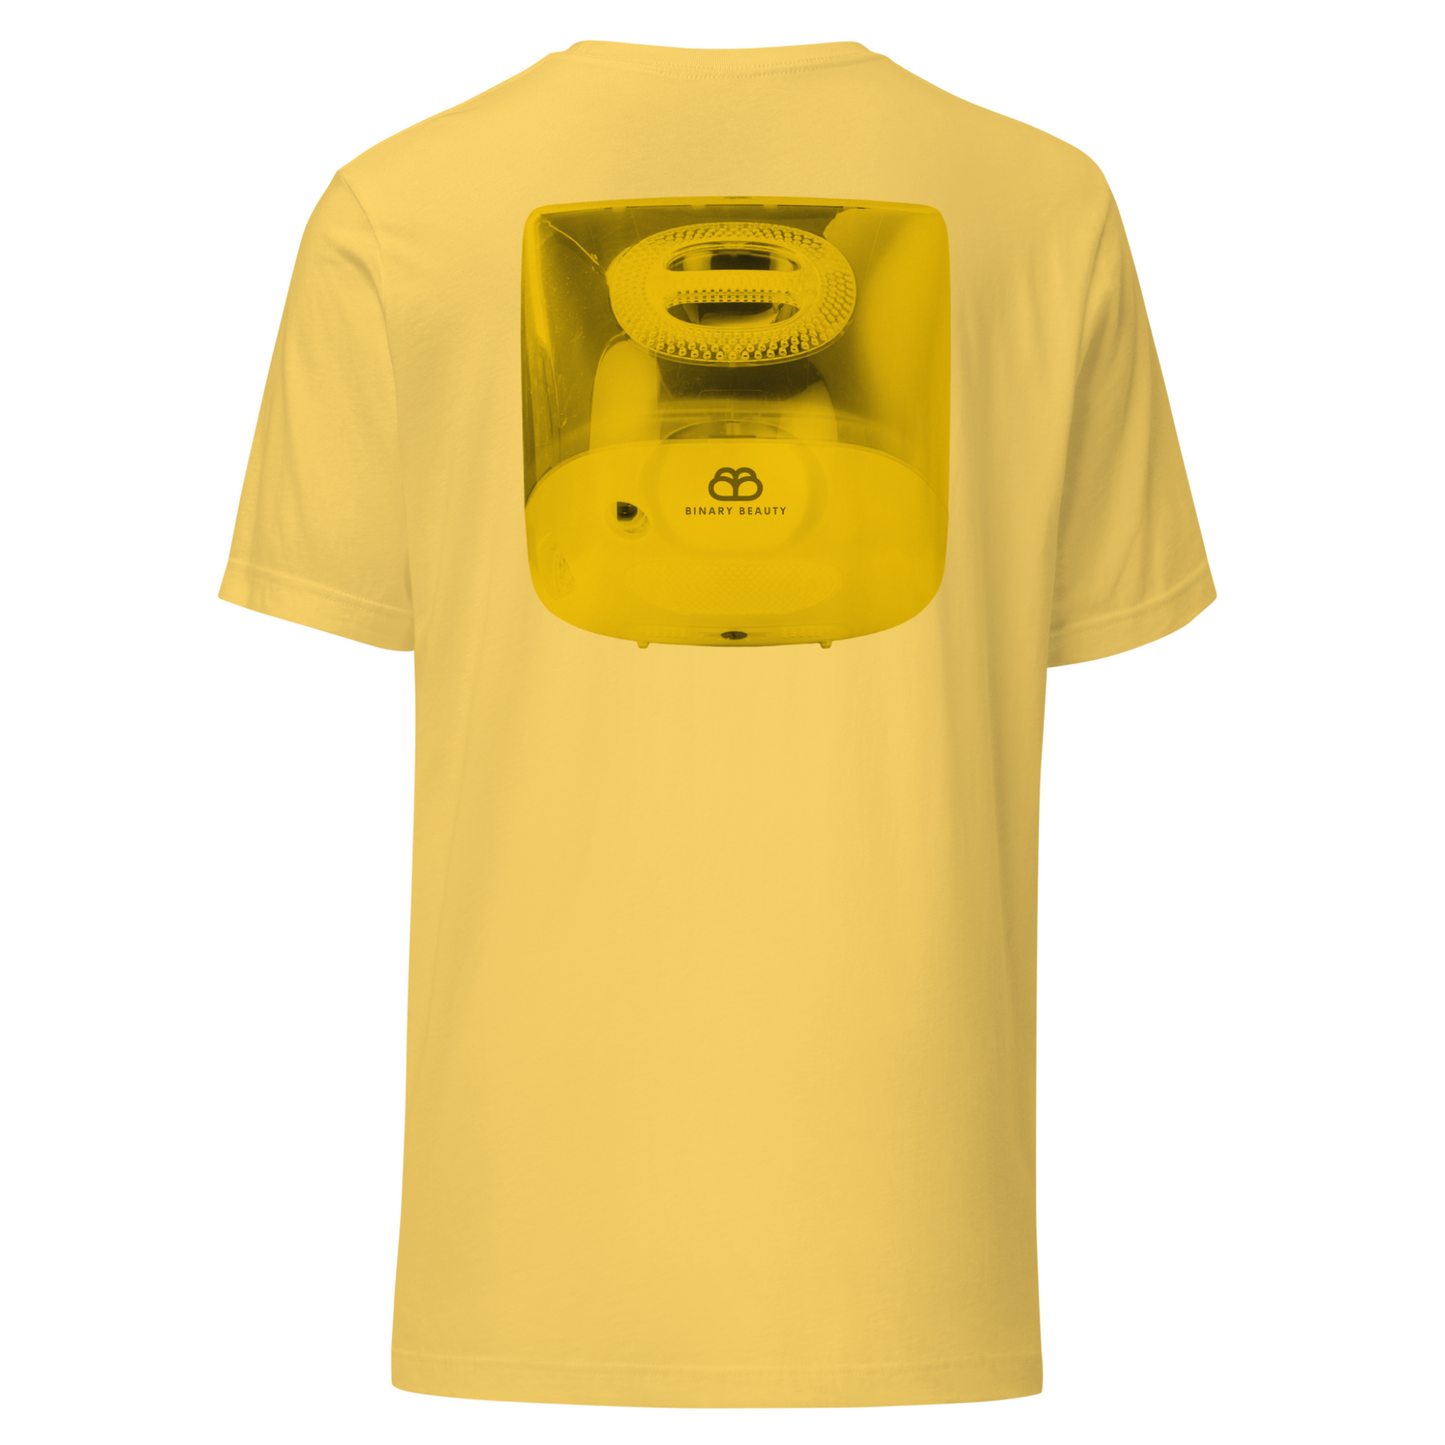 iCandy Softwear Shirt in Lemon